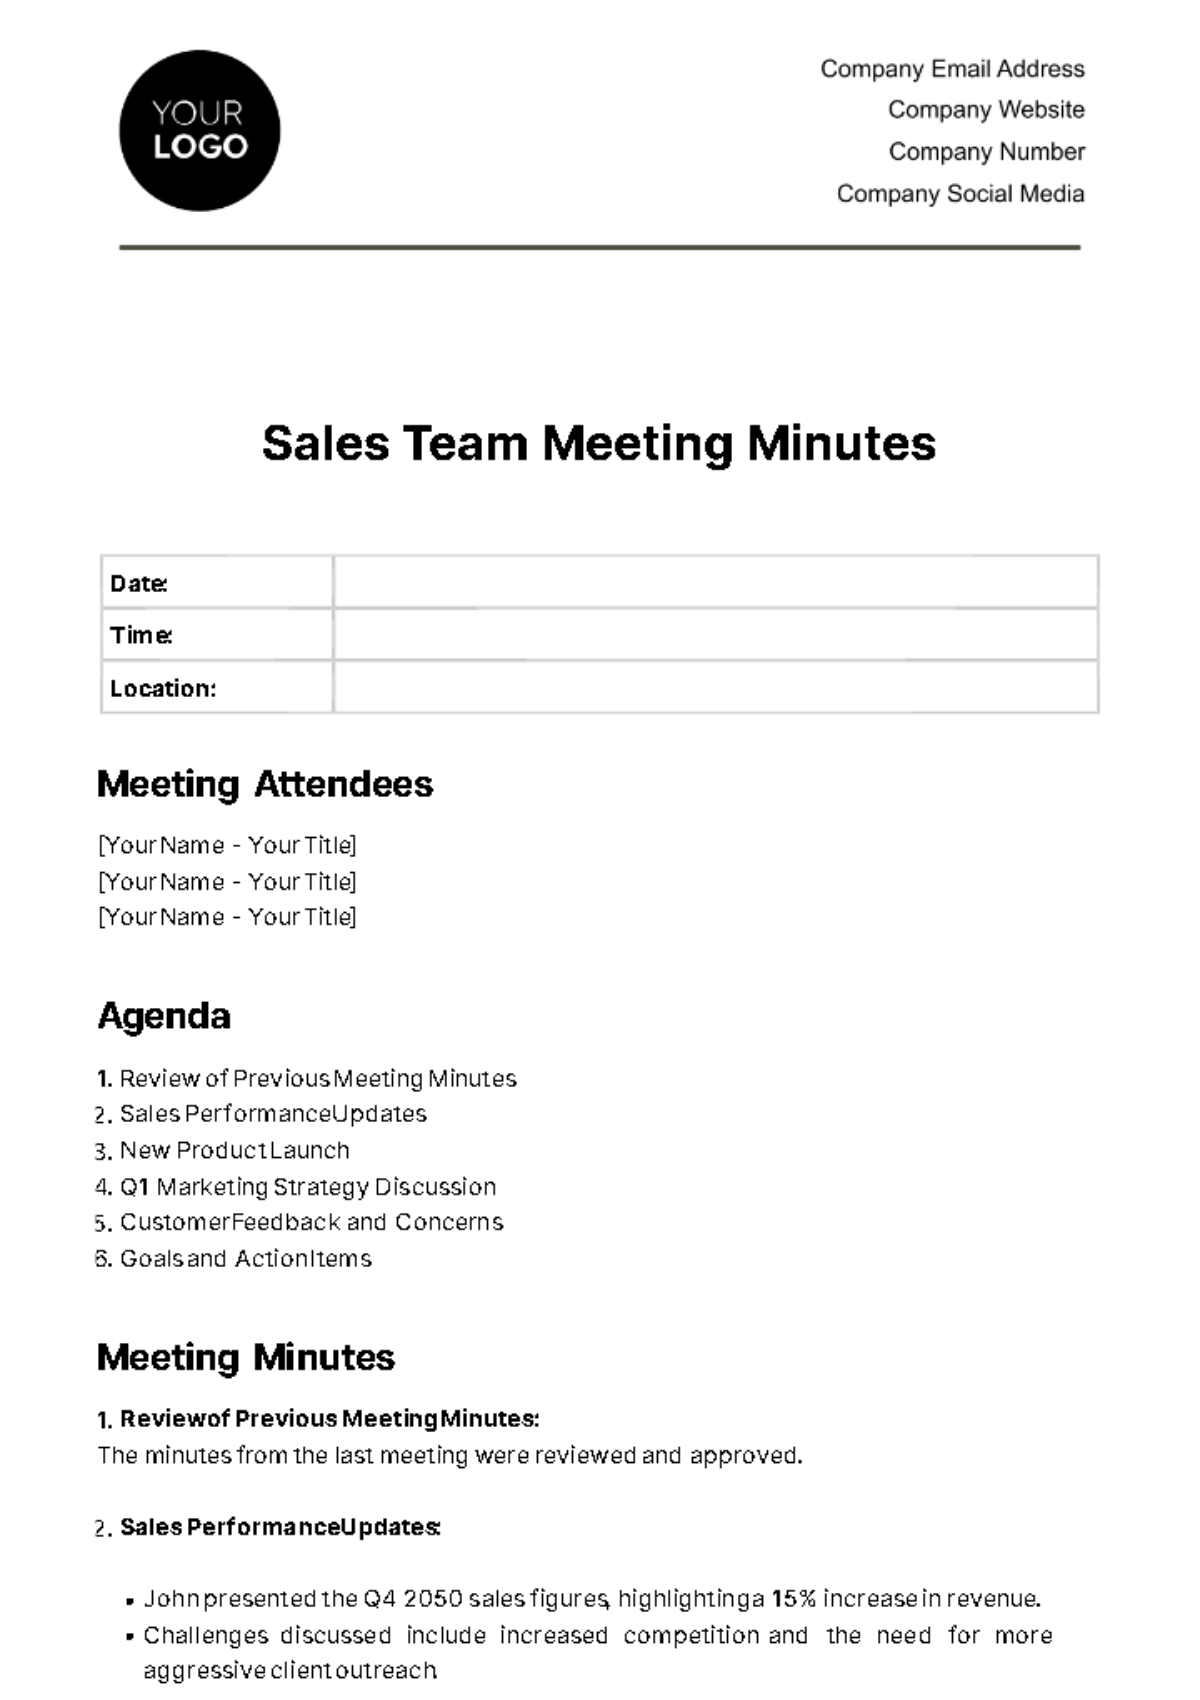 Sales Team Meeting Minute Template